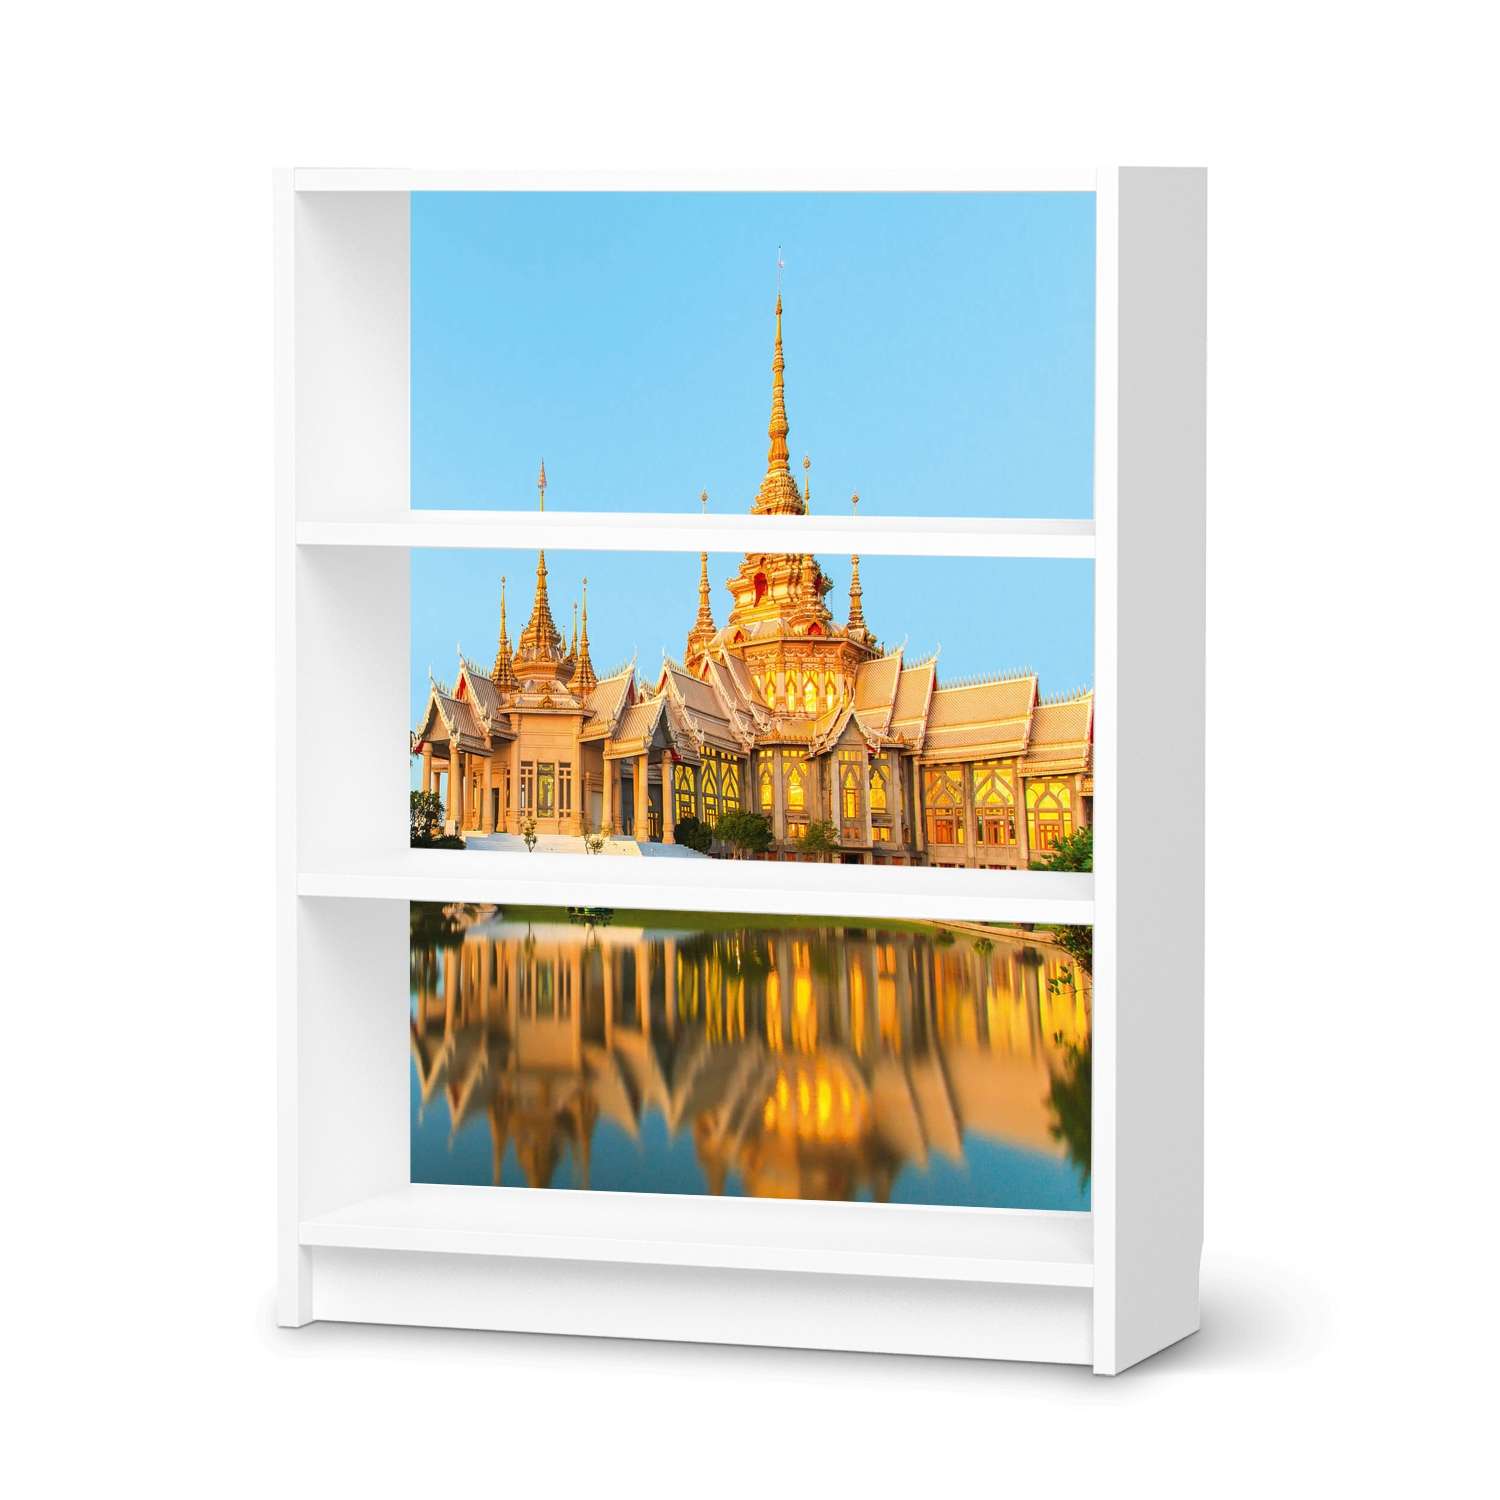 M?belfolie IKEA Billy Regal 3 F?cher - Design: Thailand Temple von creatisto